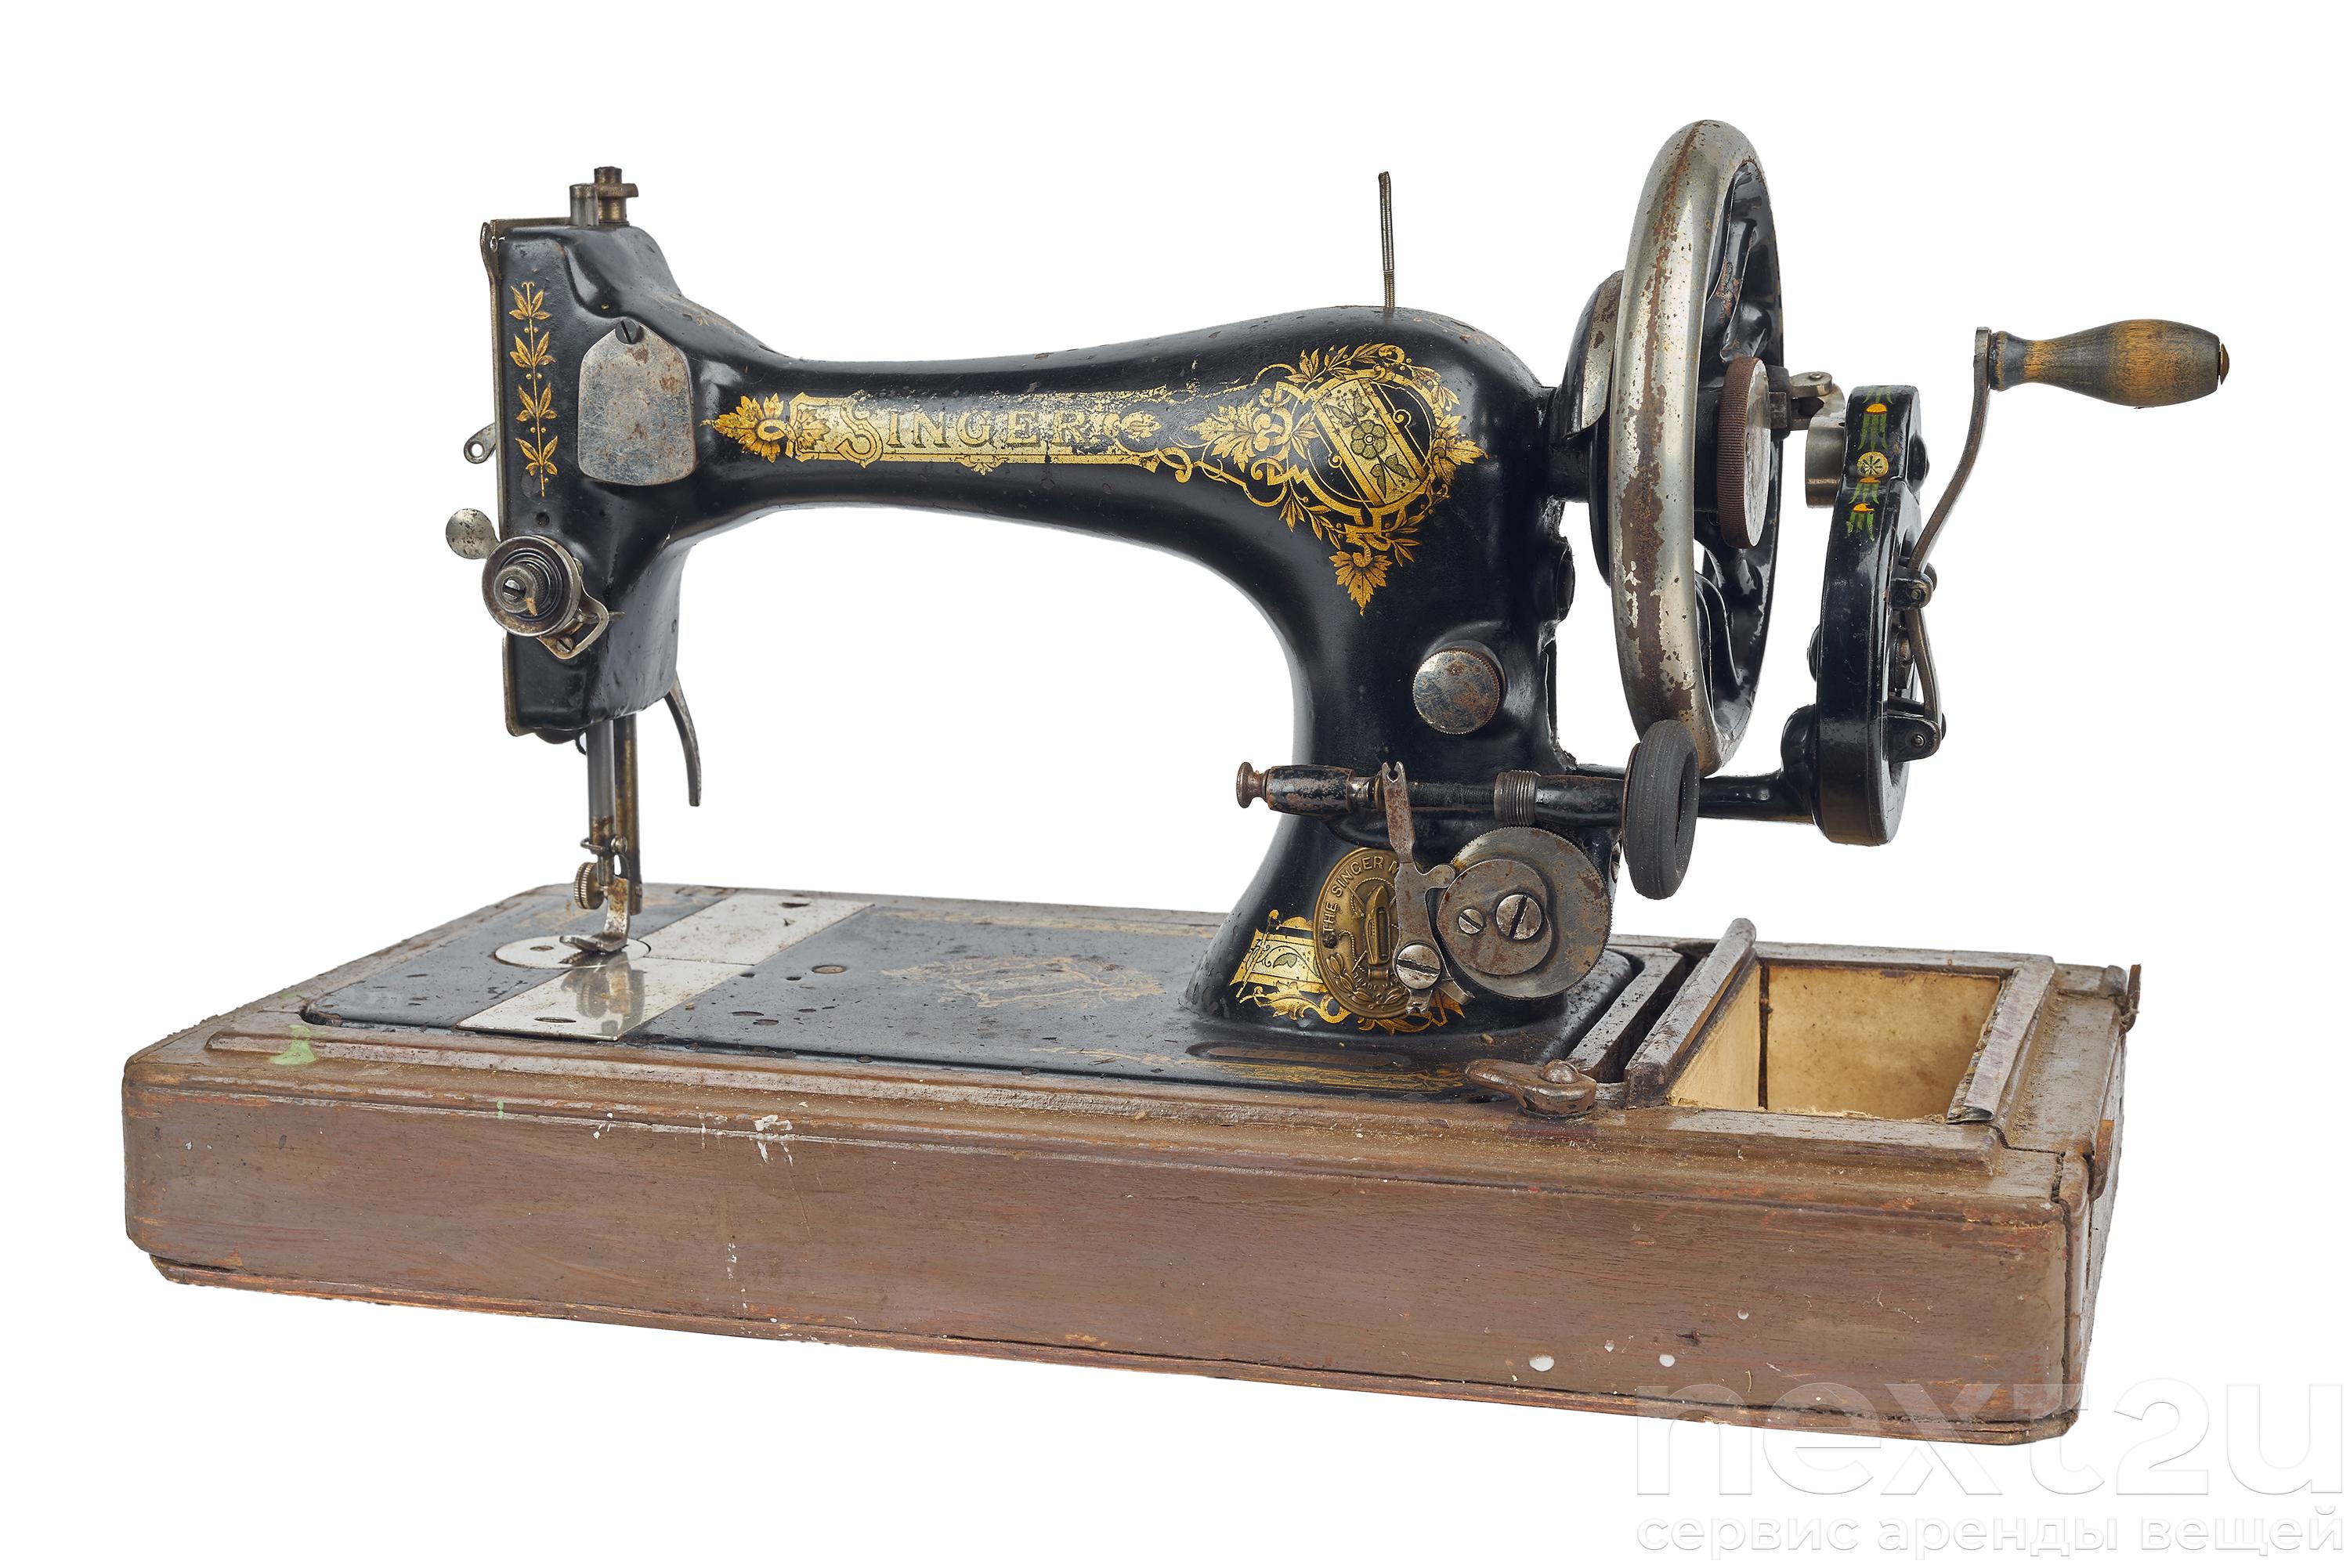 Купить продать швейную машинку. Швейная машинка Зингер s010l. Зингер швейная машинка 1902н. Швейная машинка Zinger s760. Швейная машина Зингер Германия т237890.